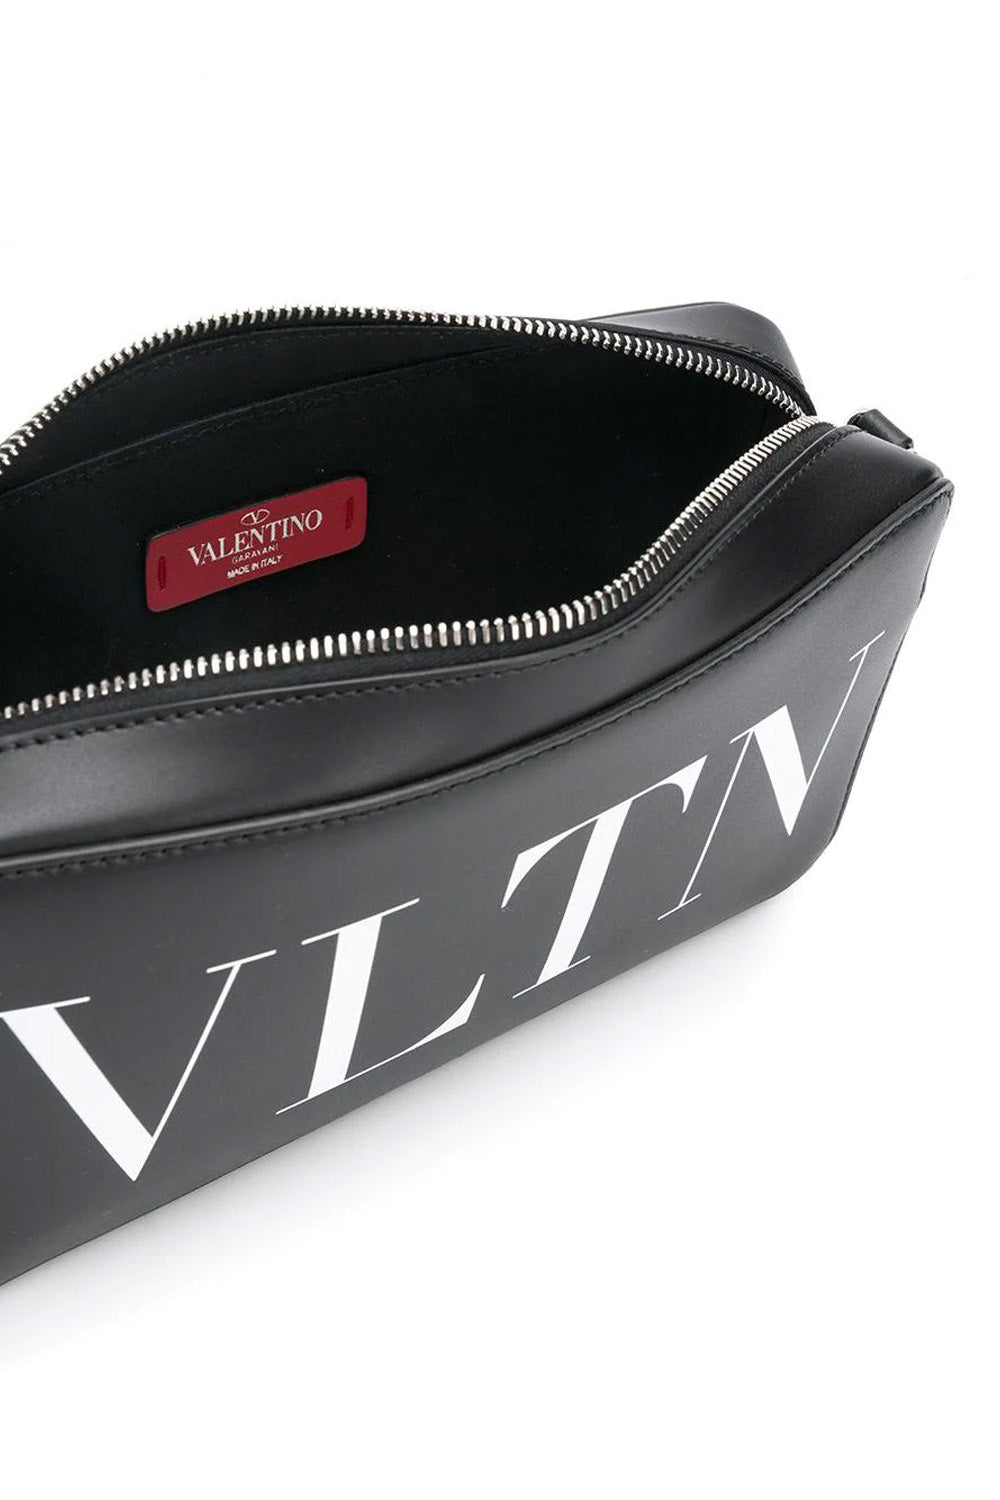 Valentino VLTN leather shoulder bag